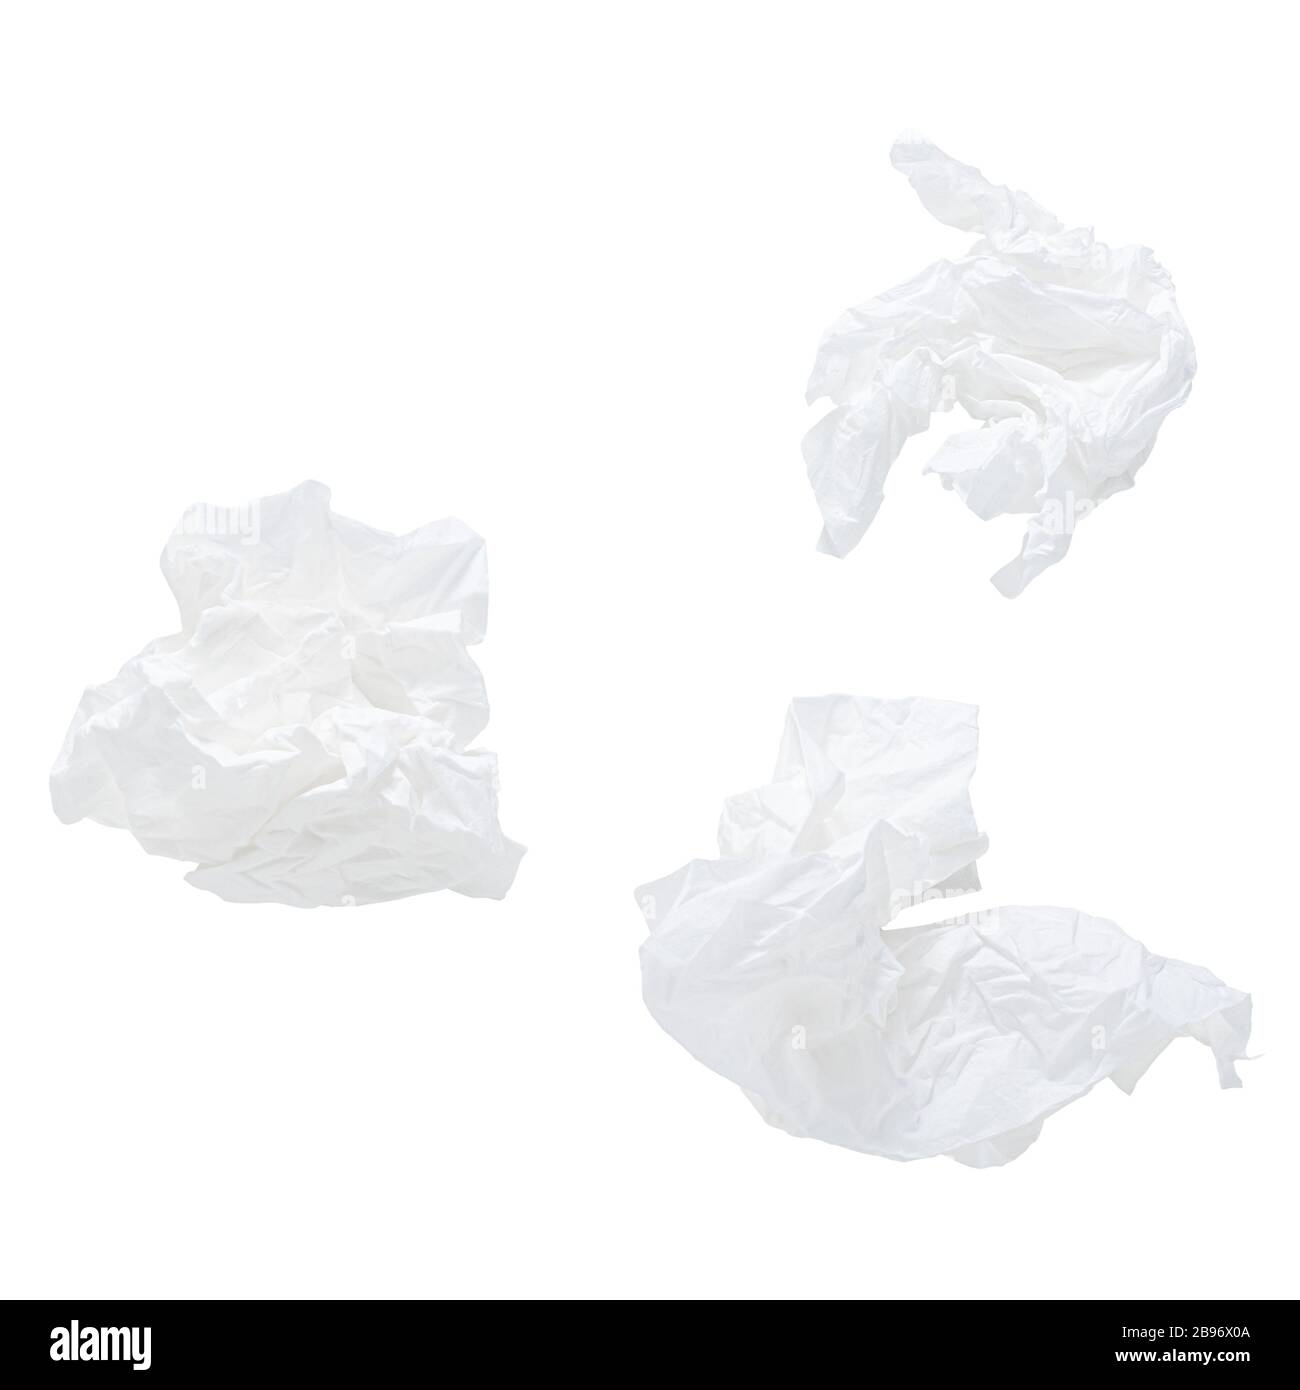 mouchoir en papier utilisé isolé sur fond blanc Photo Stock - Alamy